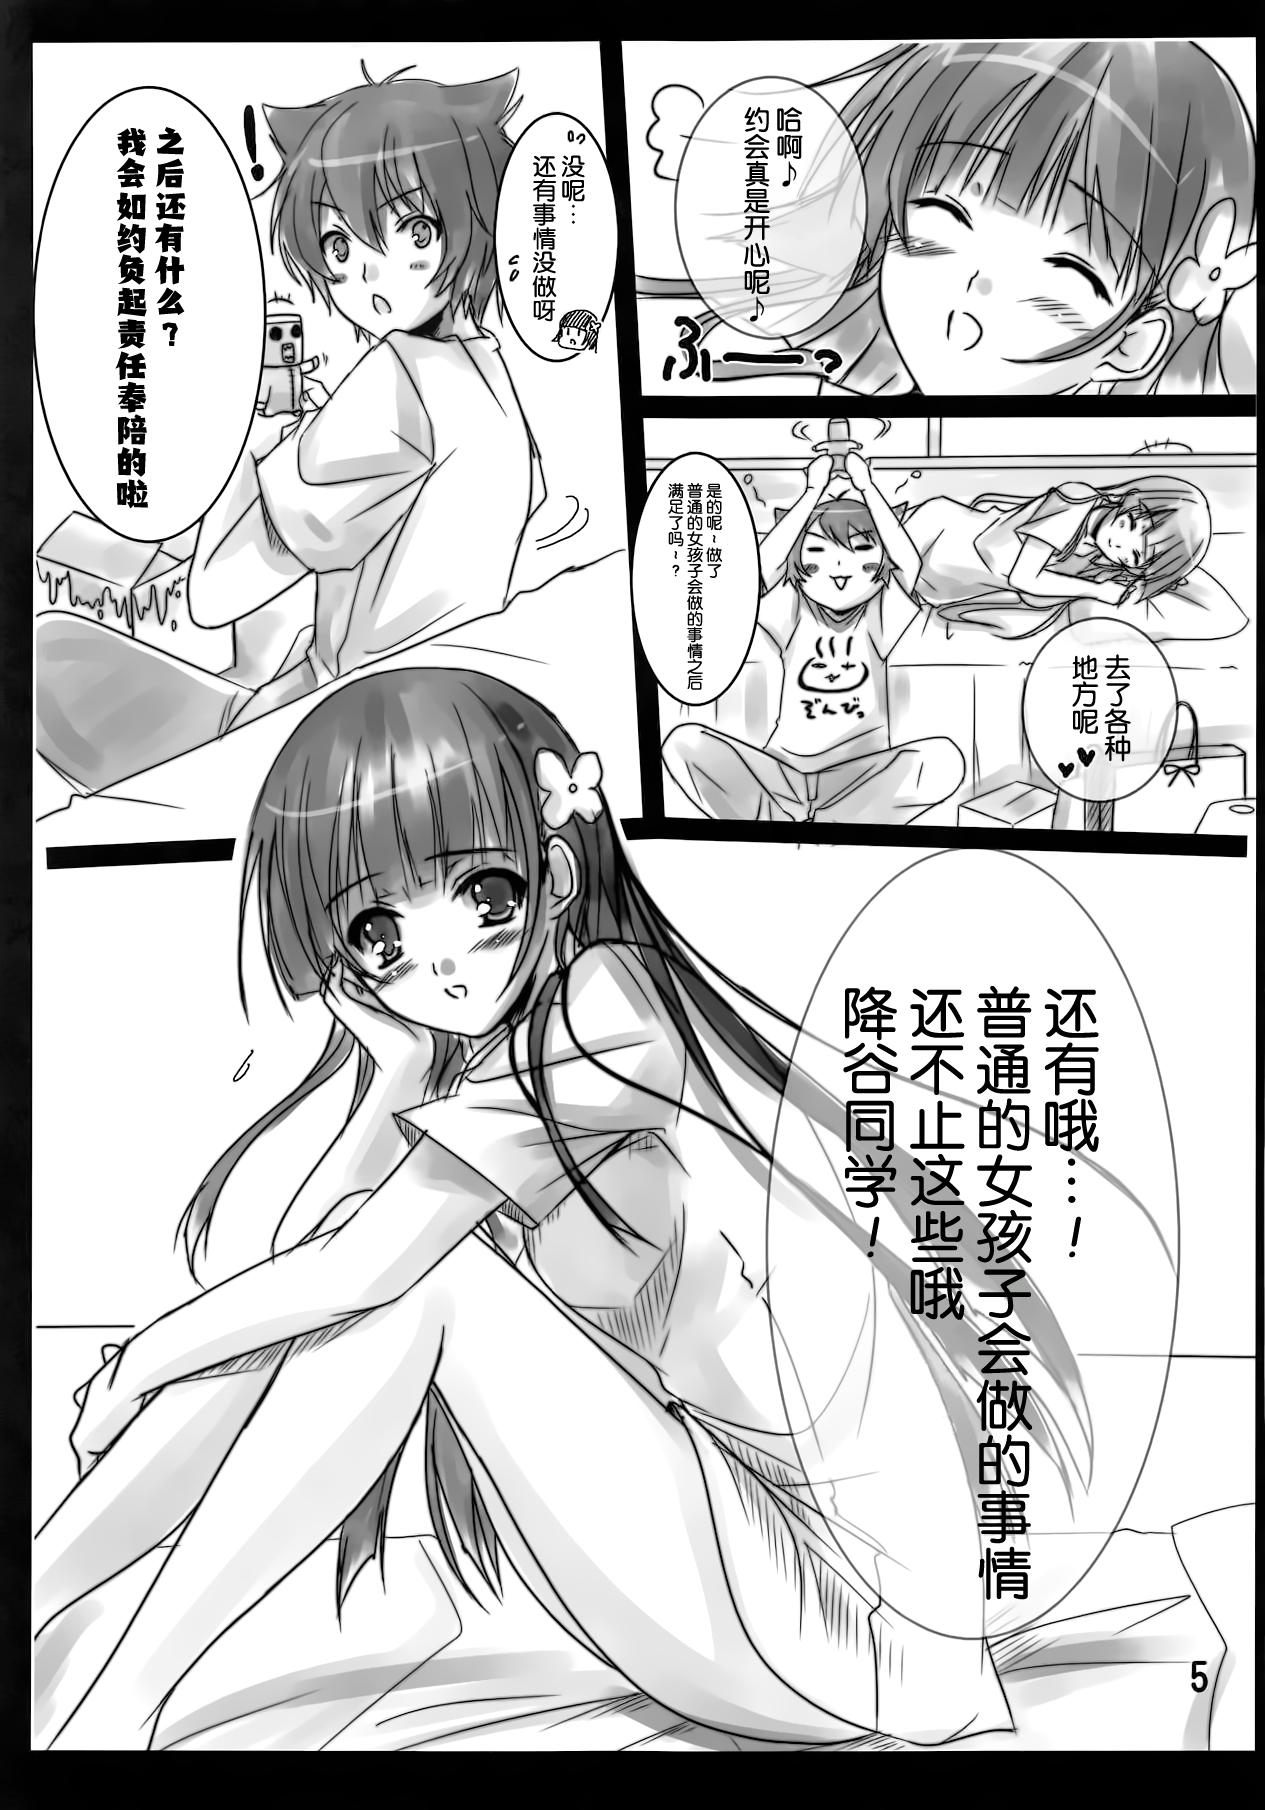 Lezbi Ame ga Furou ga Zombie ga Furou ga - Sankarea Hardcoresex - Page 5